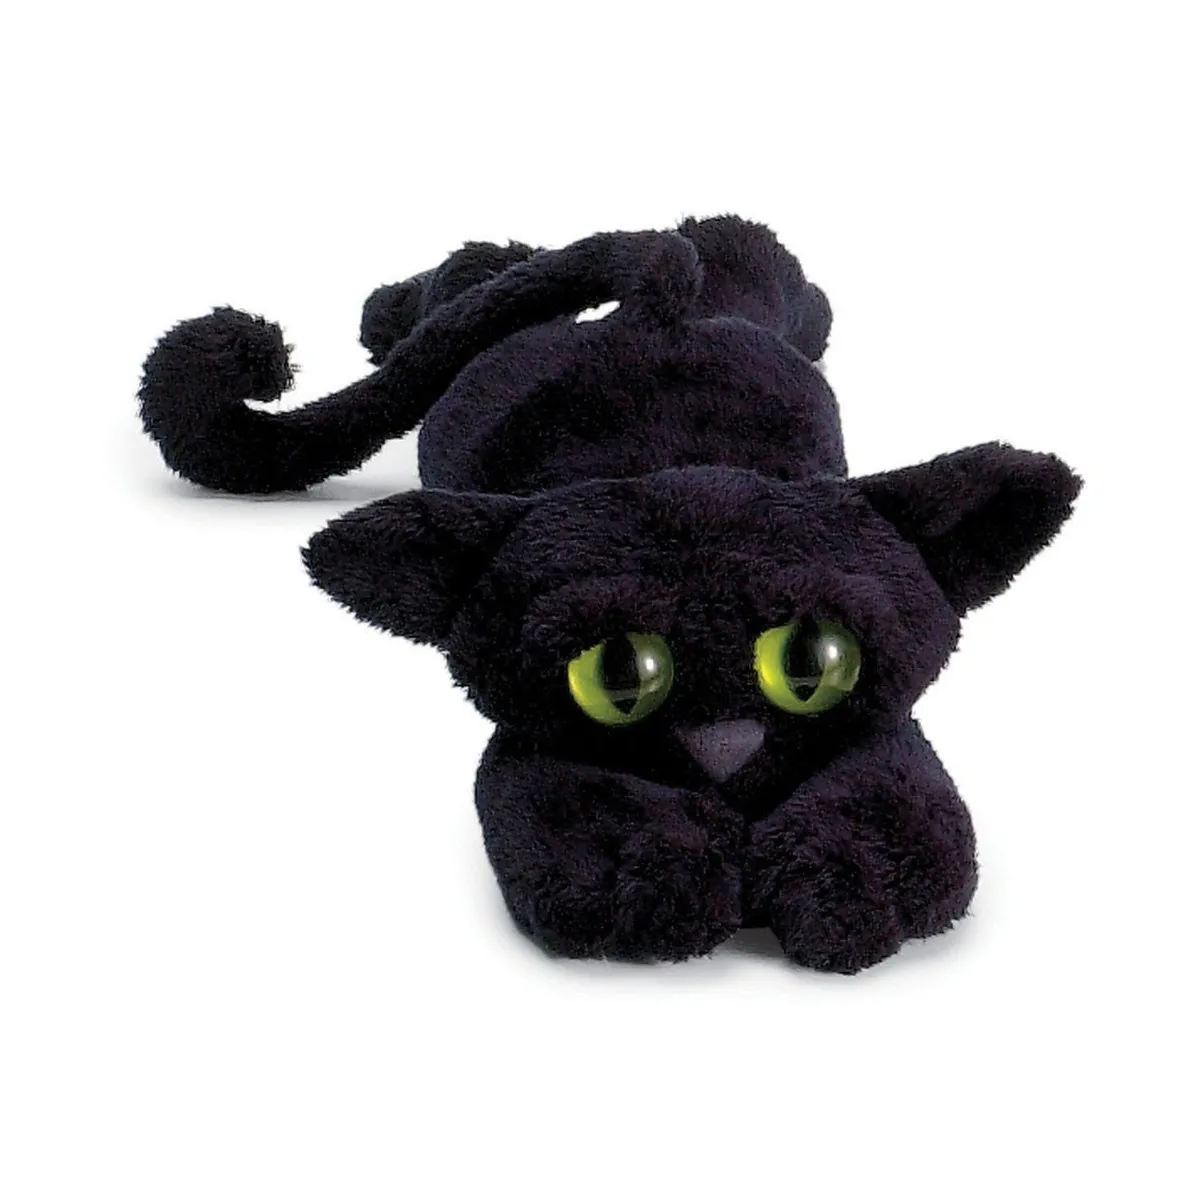 Мягкая игрушка черный кот. Мягкая игрушка черная кошка. Плюшевая игрушка черный кот. Мягкая игрушка «чёрный котик». Игрушка питомец на удачу